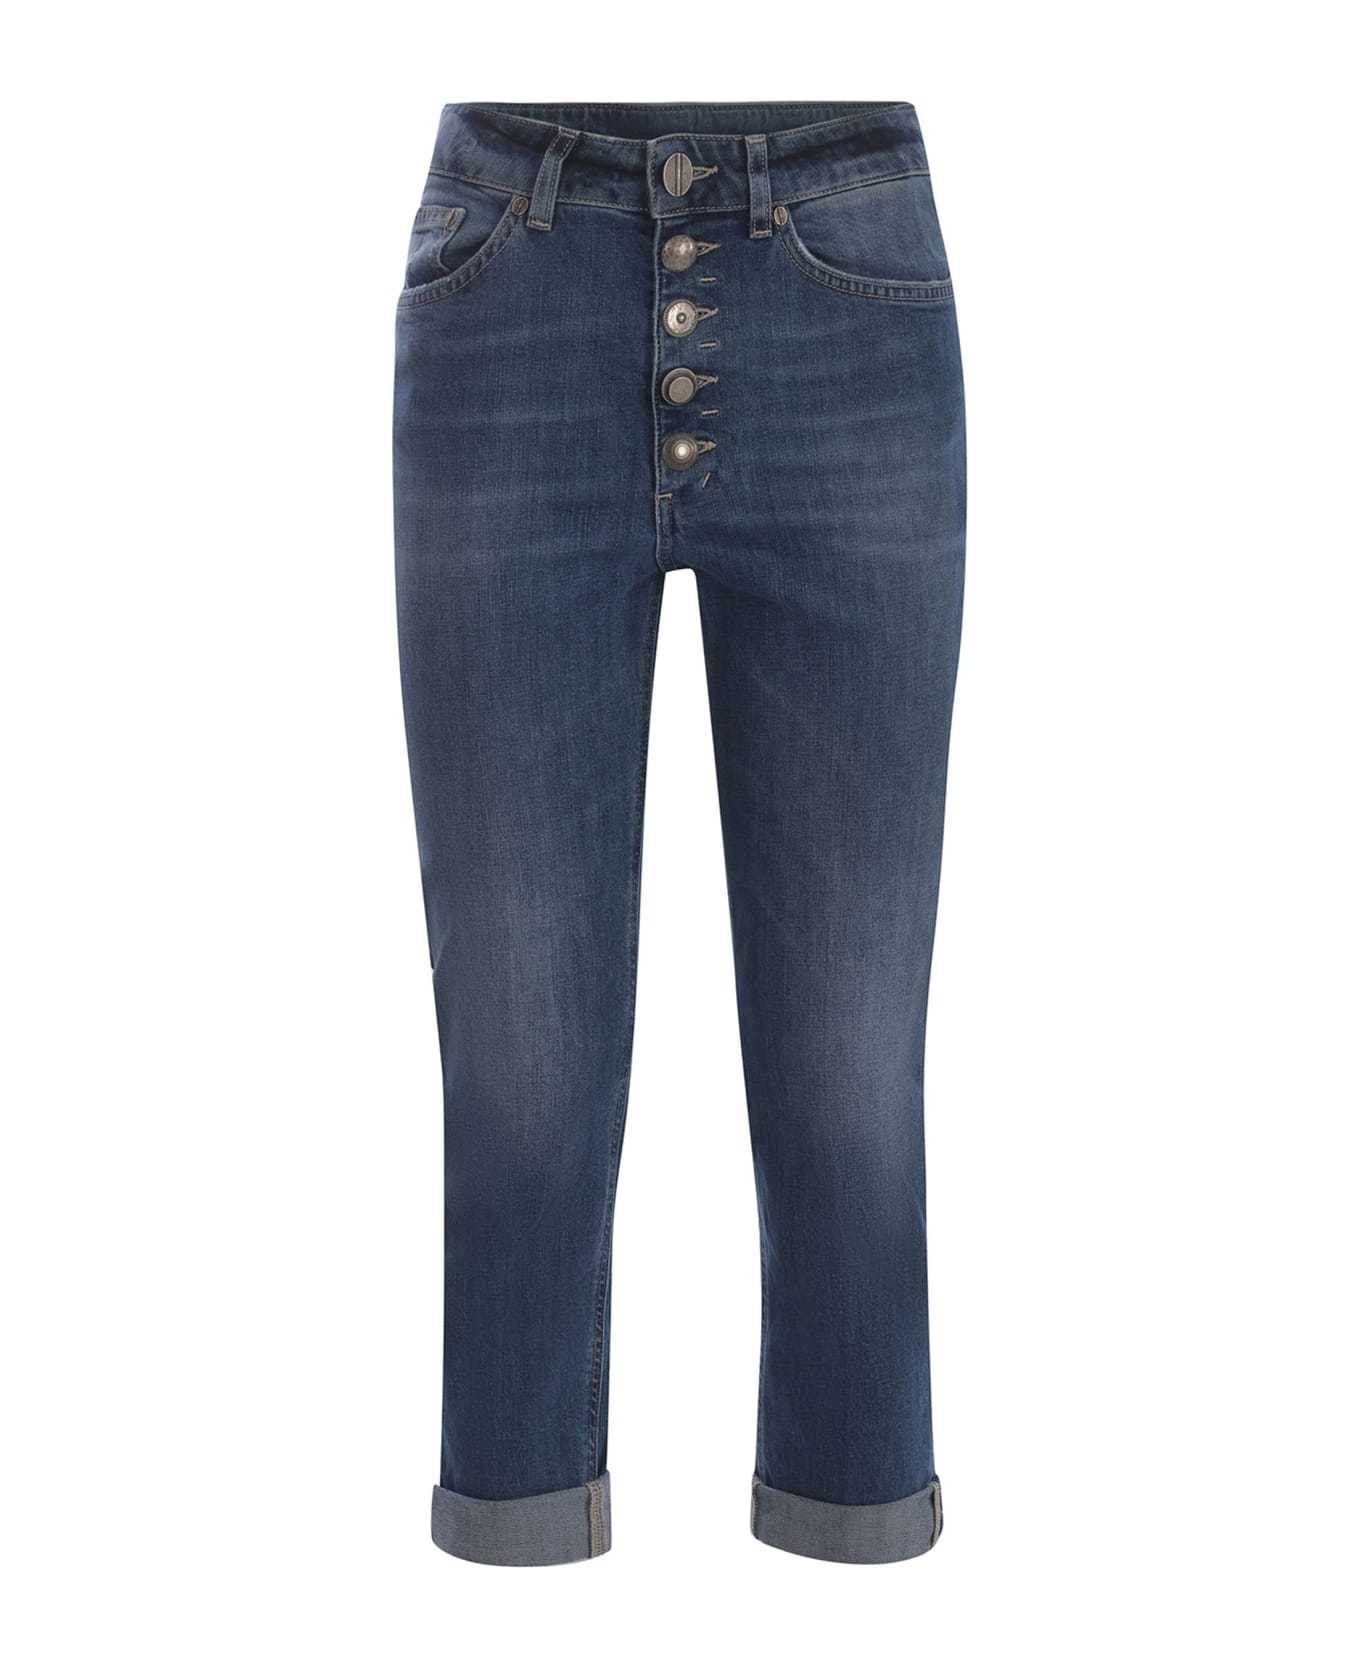 Dondup Cotton Jeans - BLUE